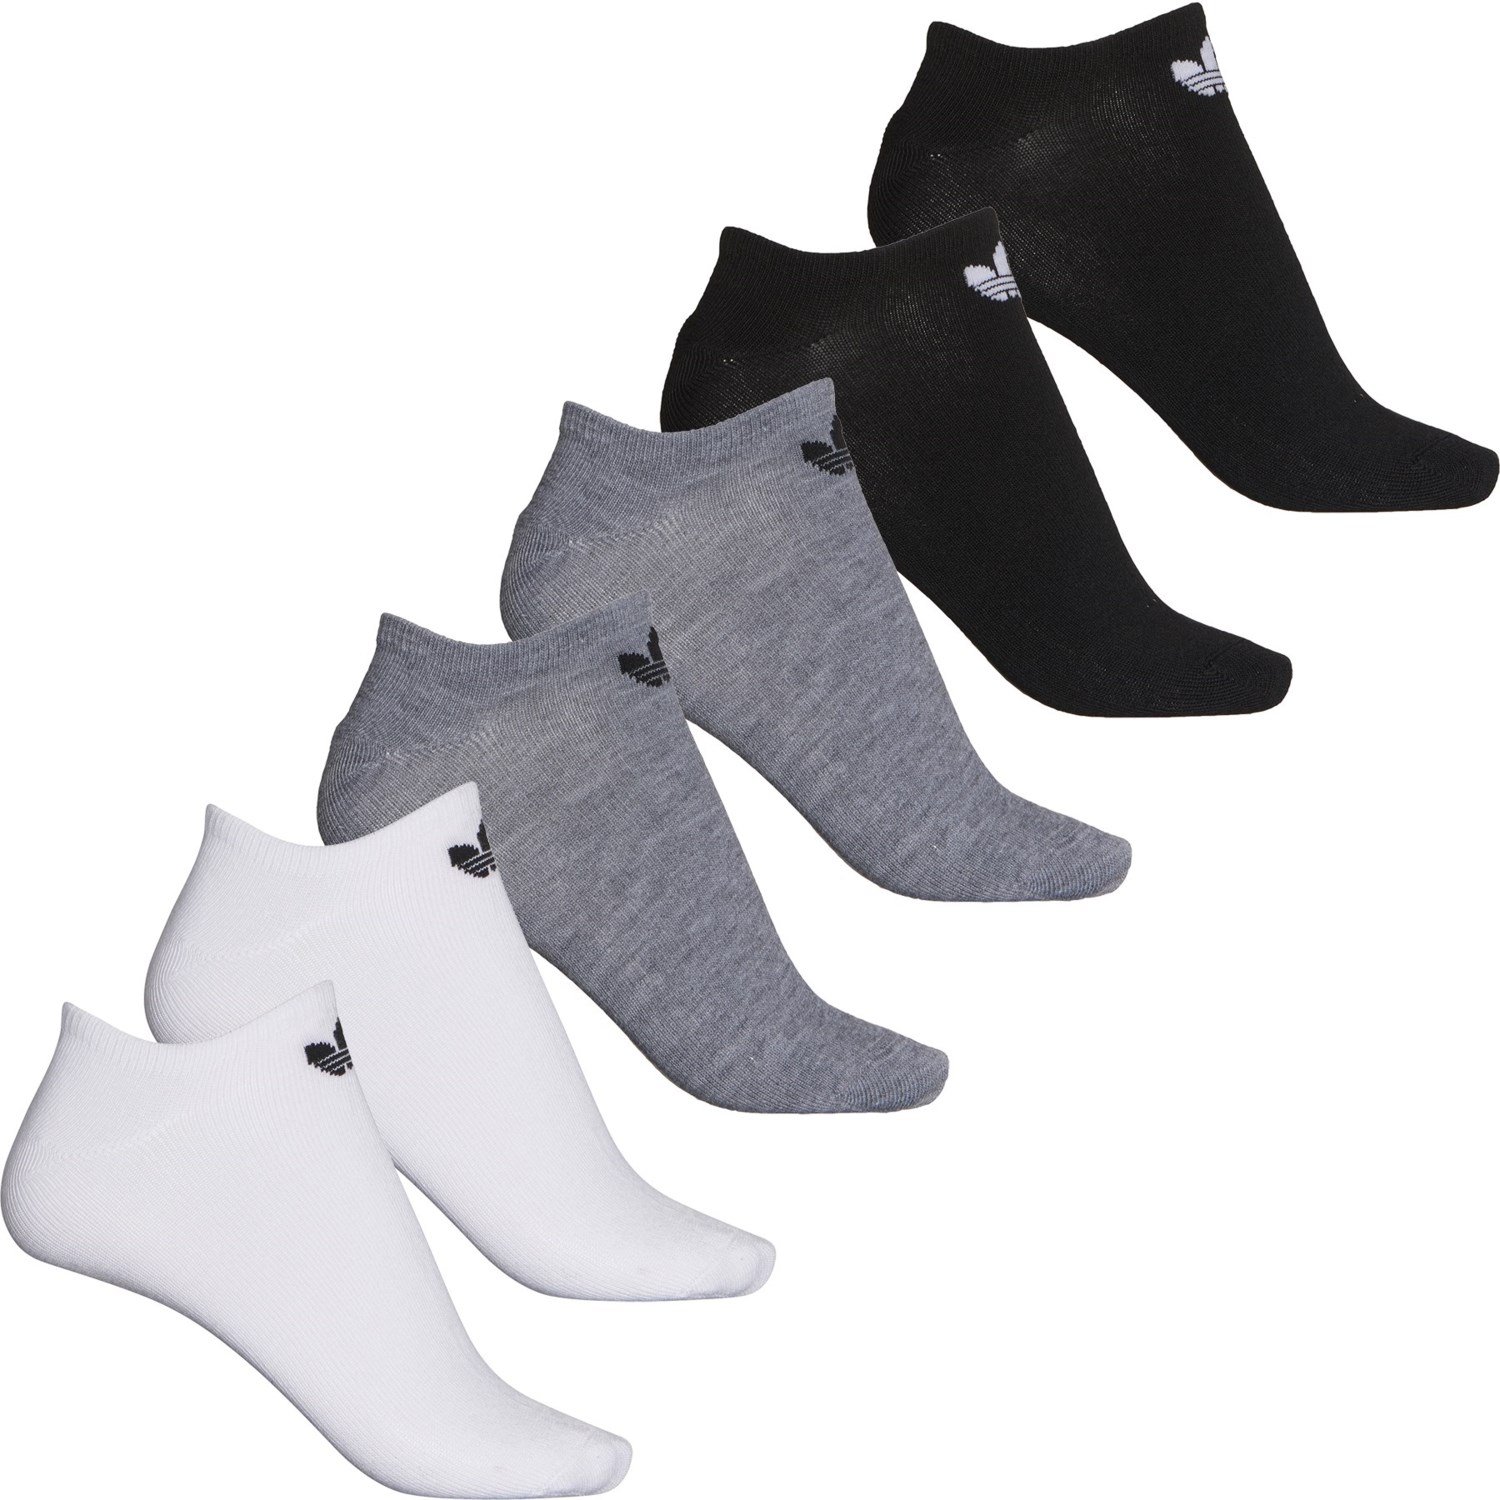 adidas Originals No-Show Socks (For Women) - Save 44%